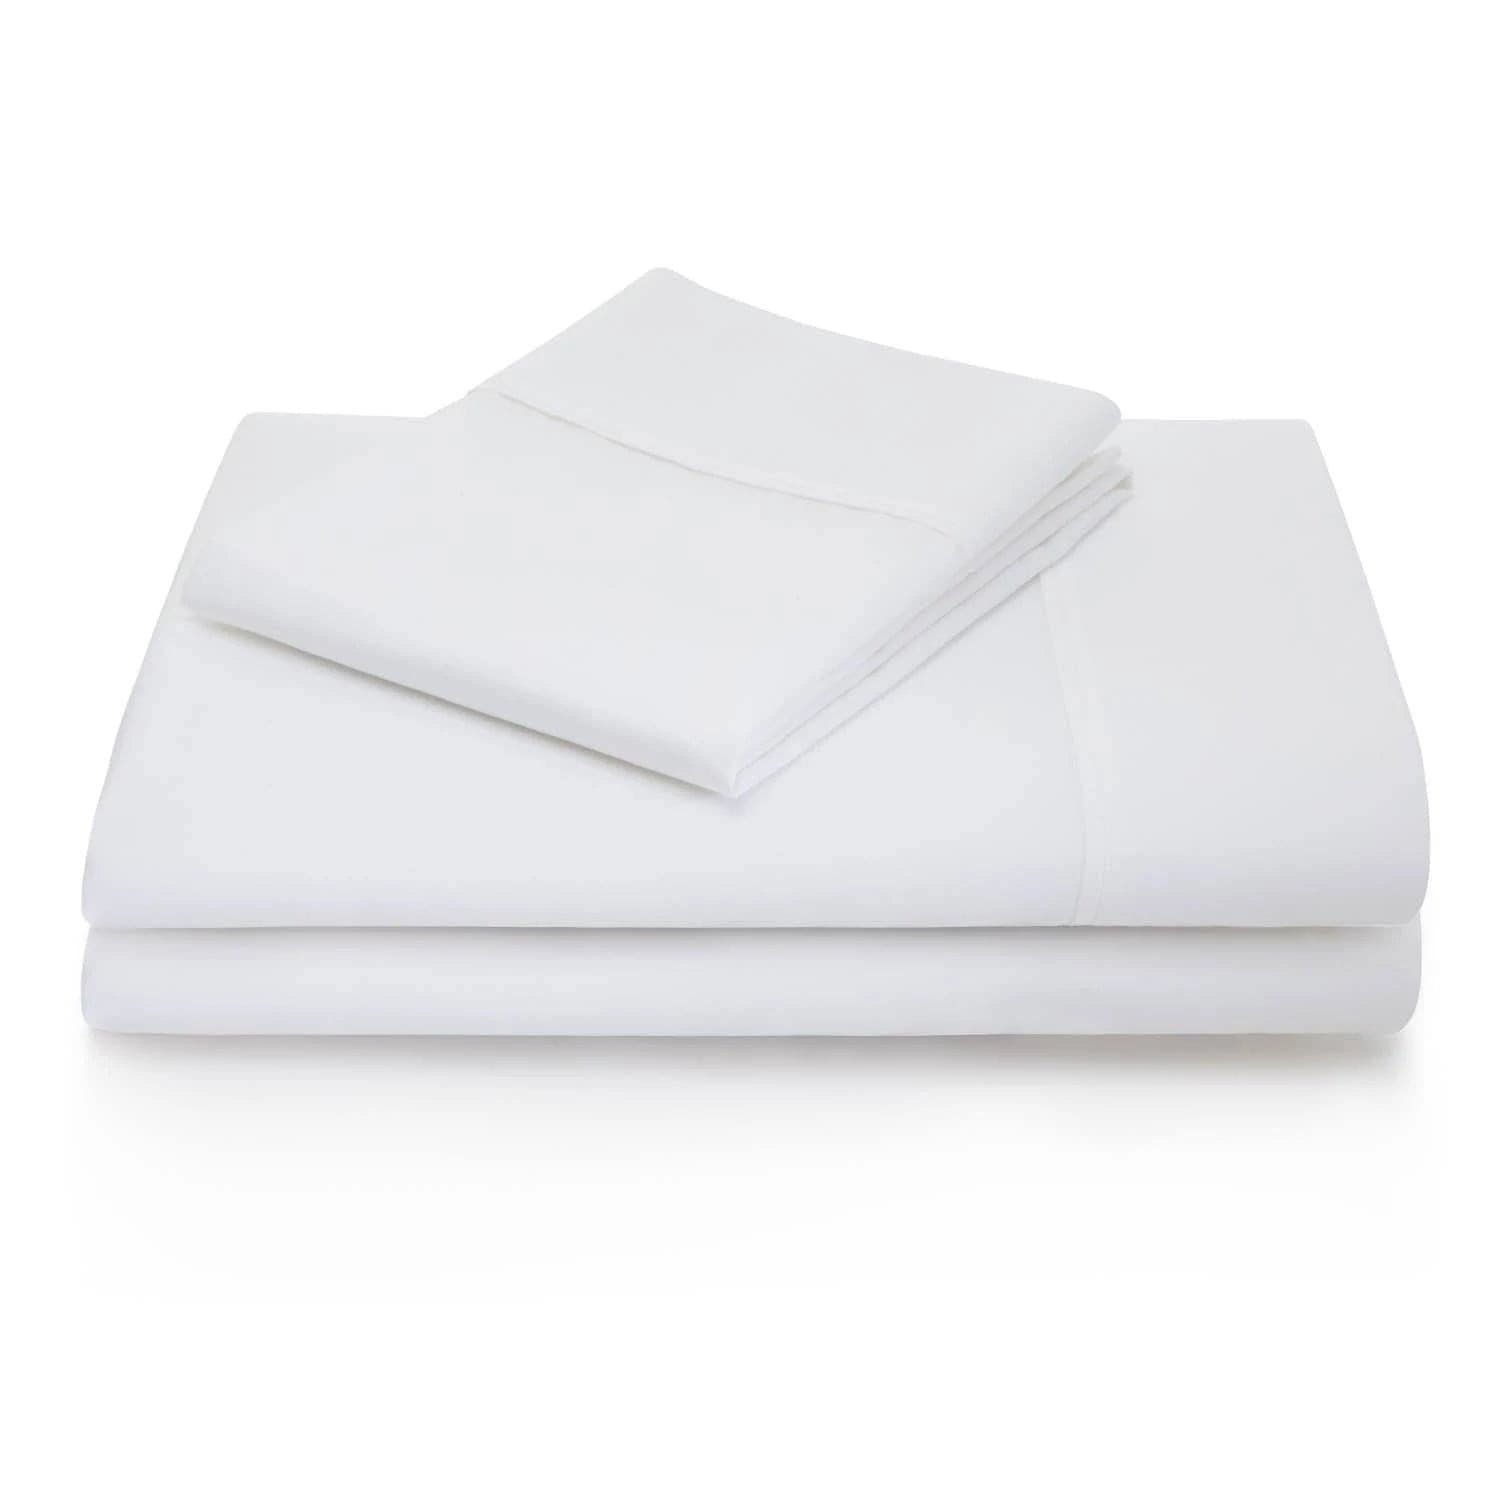 Malouf Cotton 600 Thread Count White Premium Sheet Set.